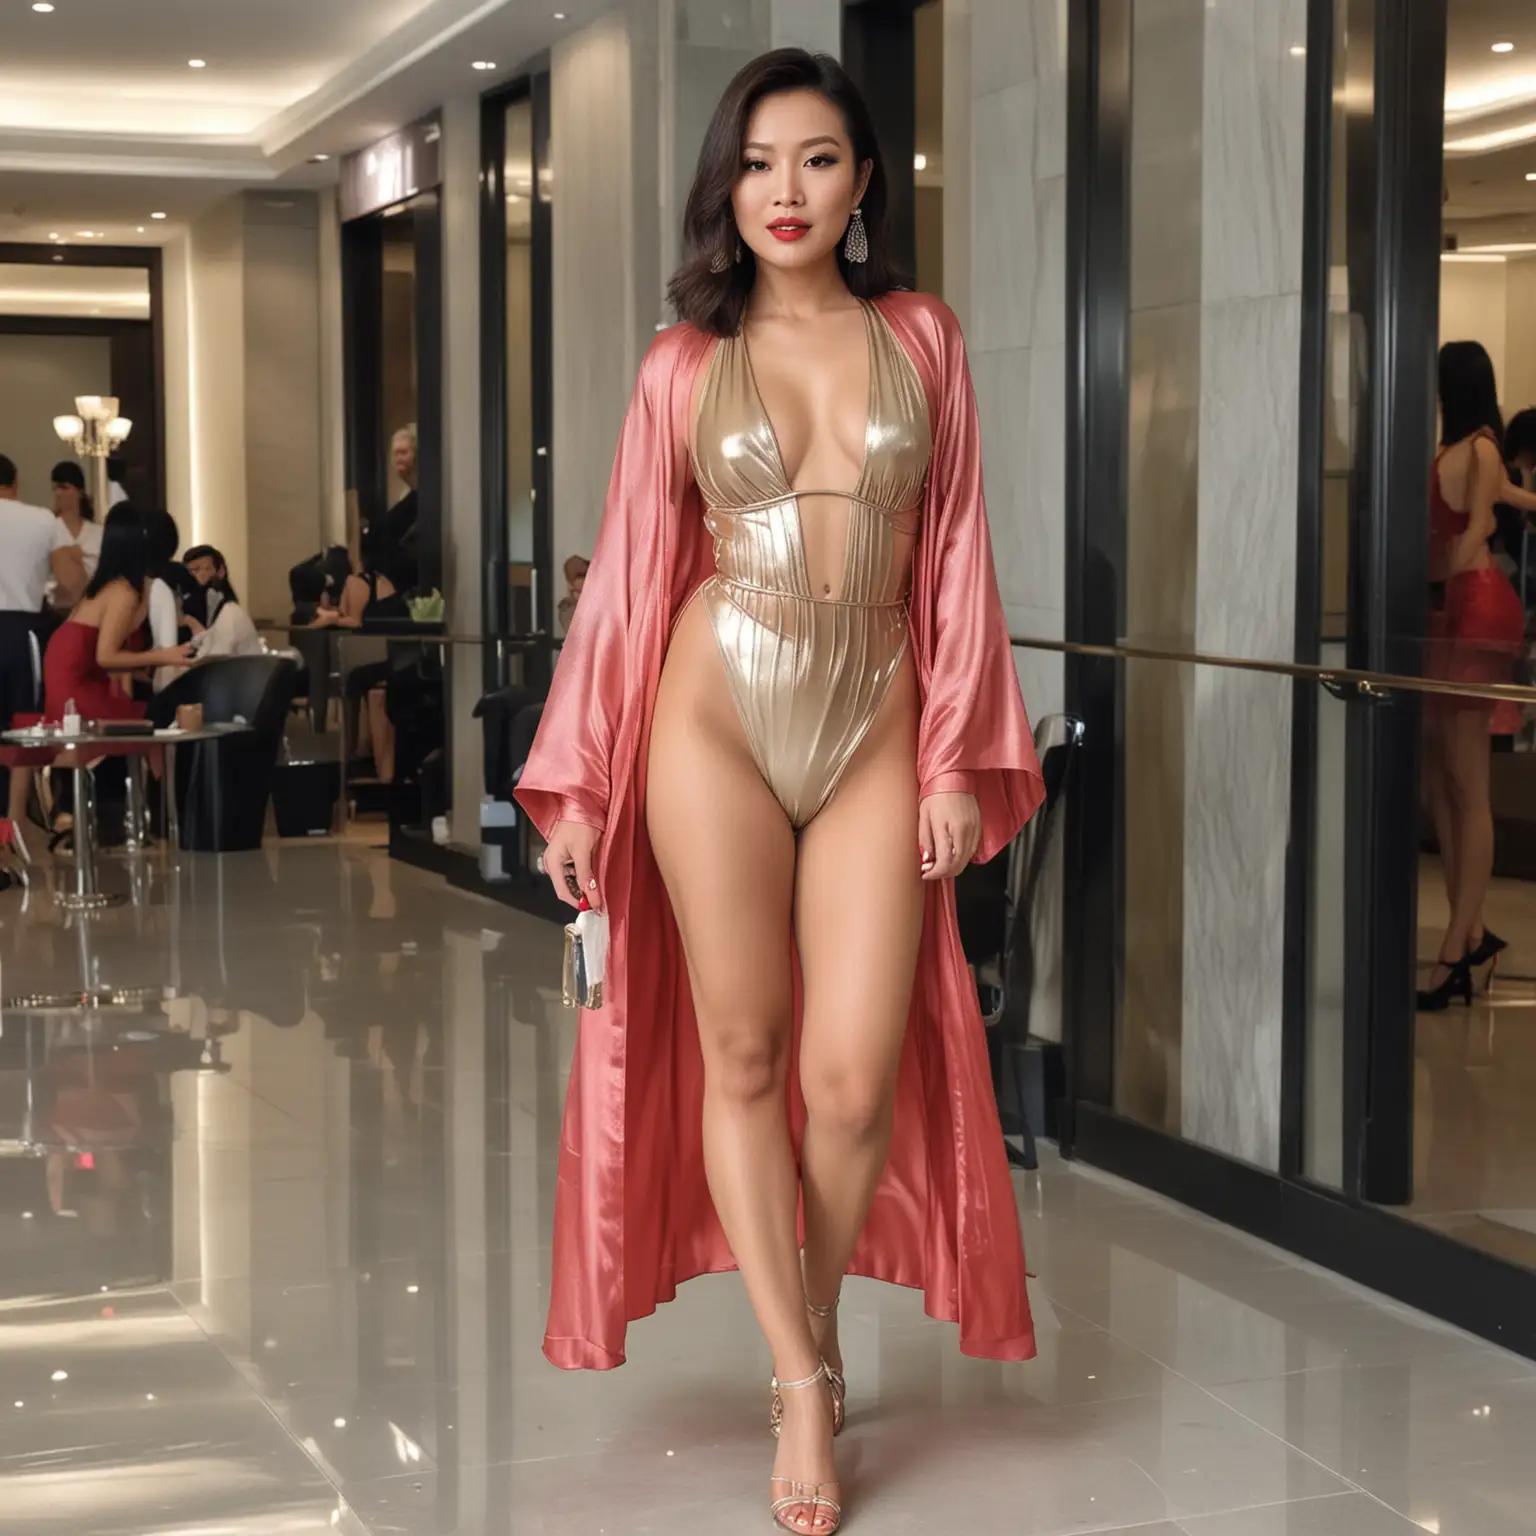 Stunning Mongchin Yeoh in Metallic Bikini and Sheer Robe Captivates Office Lobby Onlookers